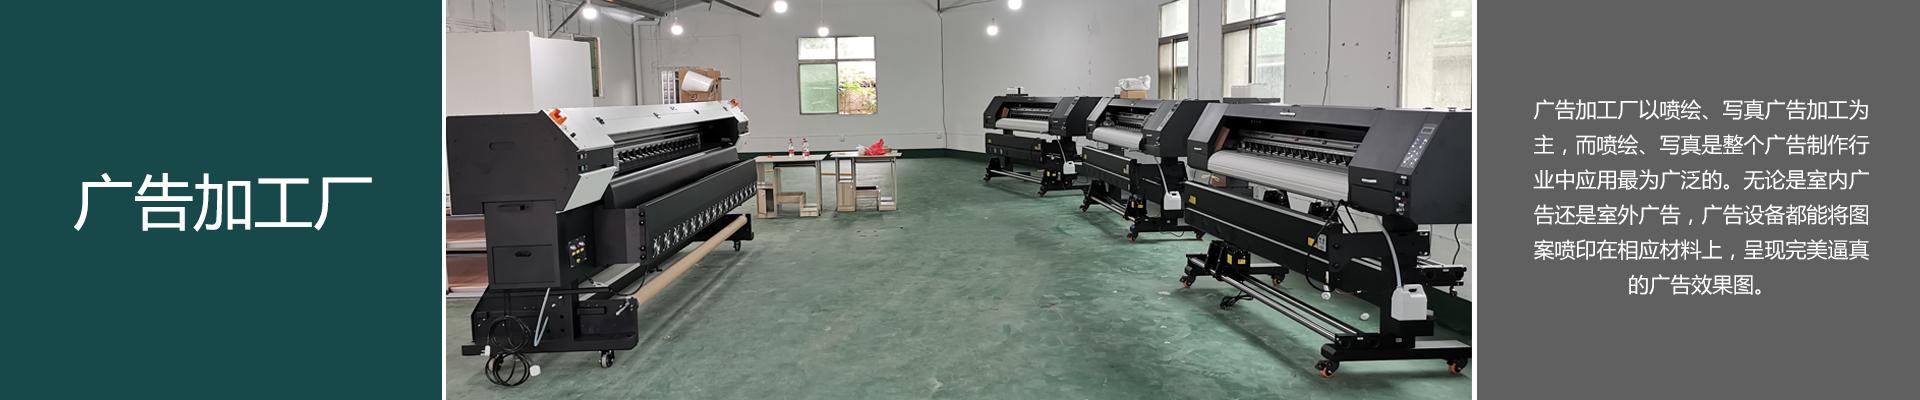 【长沙】广告加工厂配置两台雕刻机 与平板uv打印机组团